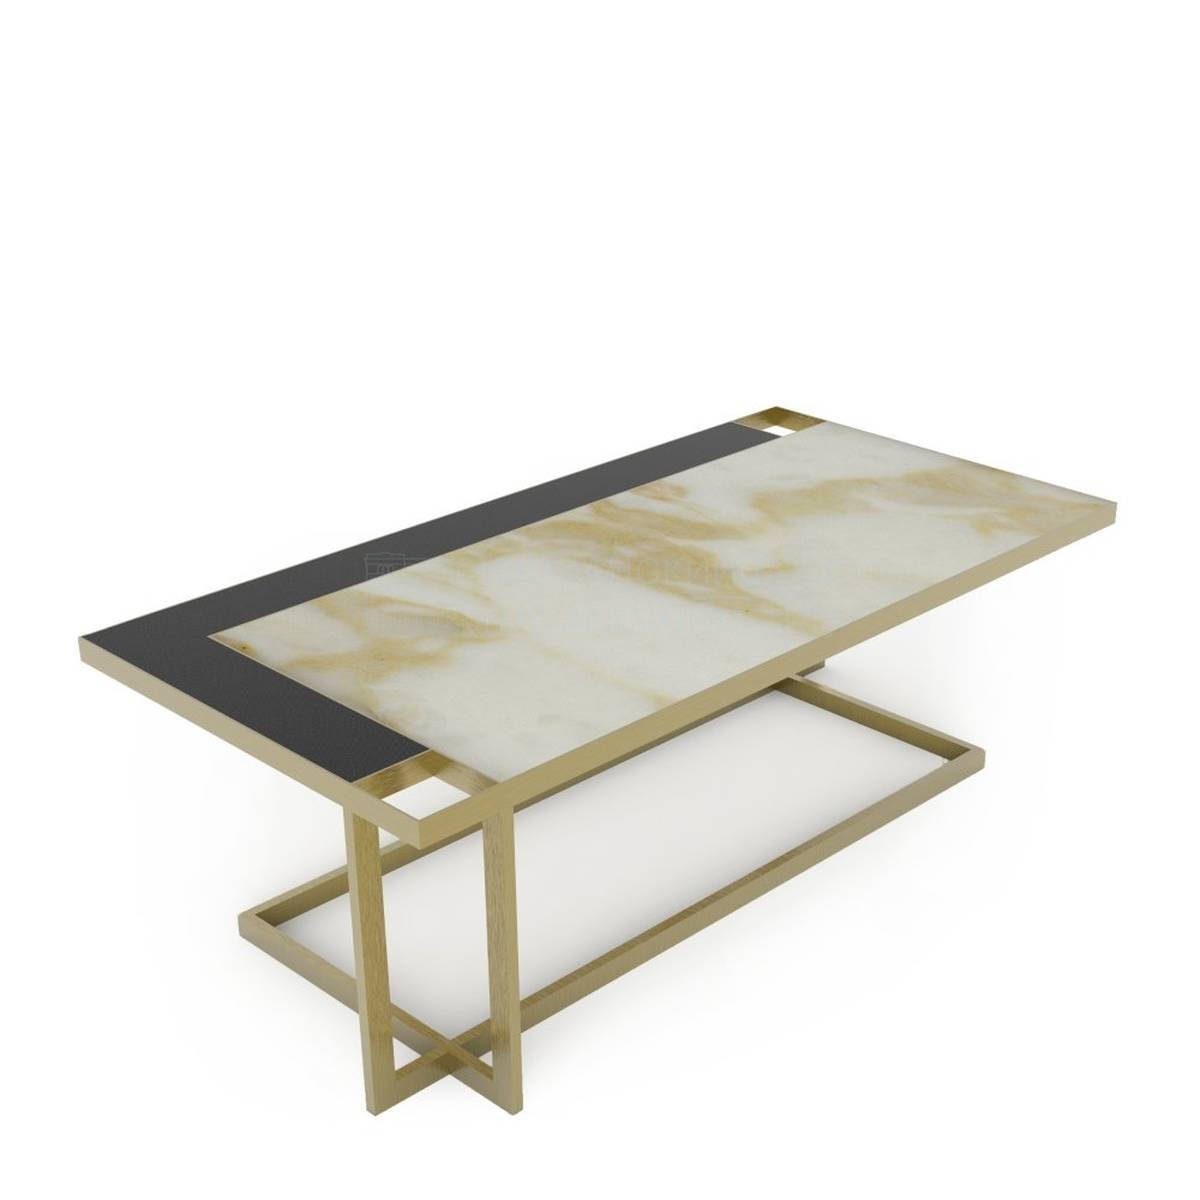 Кофейный столик Gary rectangular coffee table из Италии фабрики MARIONI